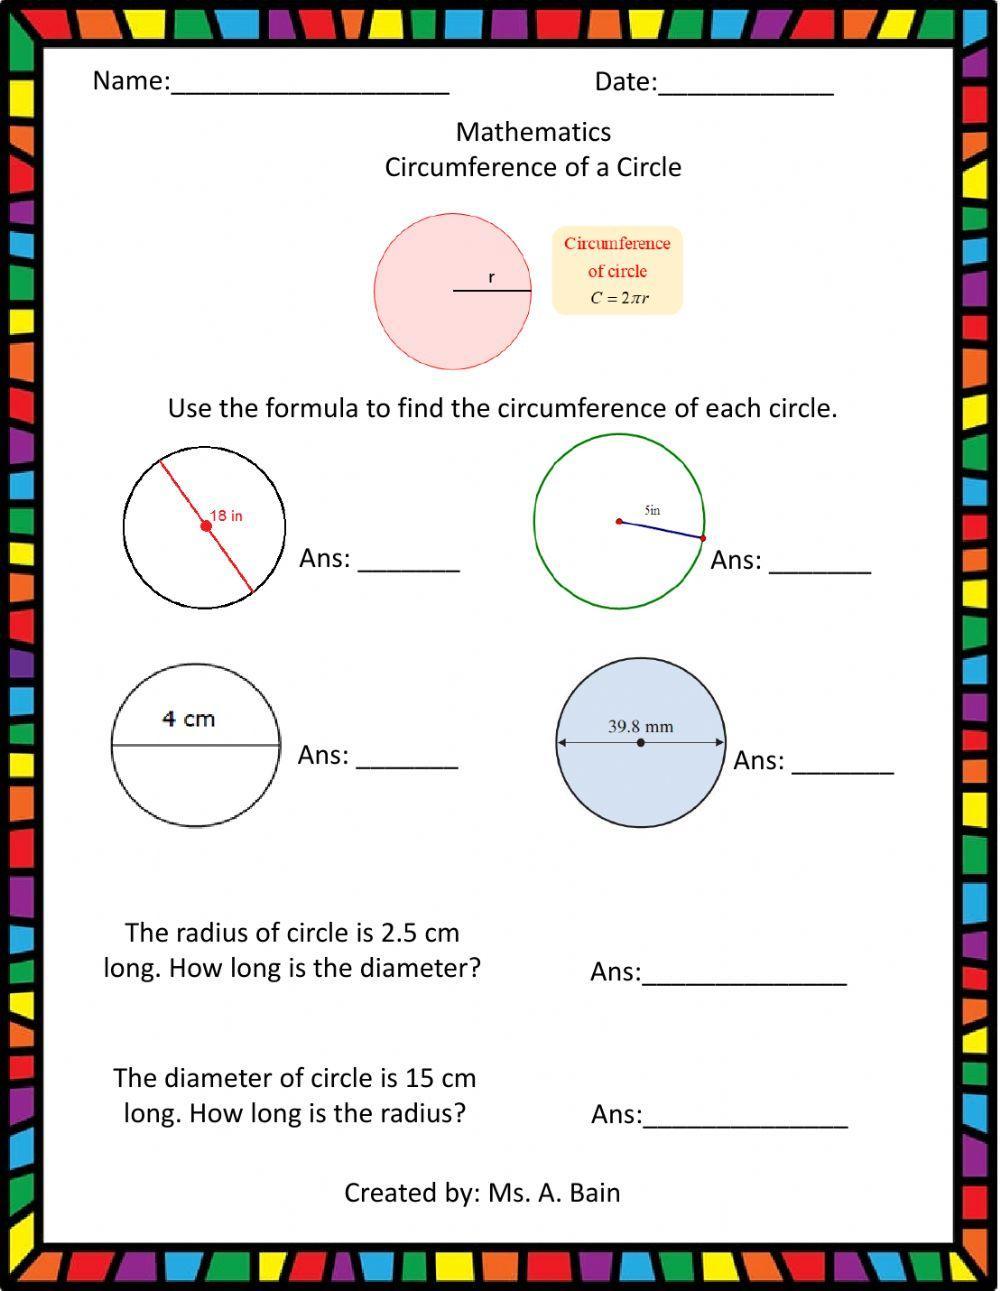 Circumference of a Circle